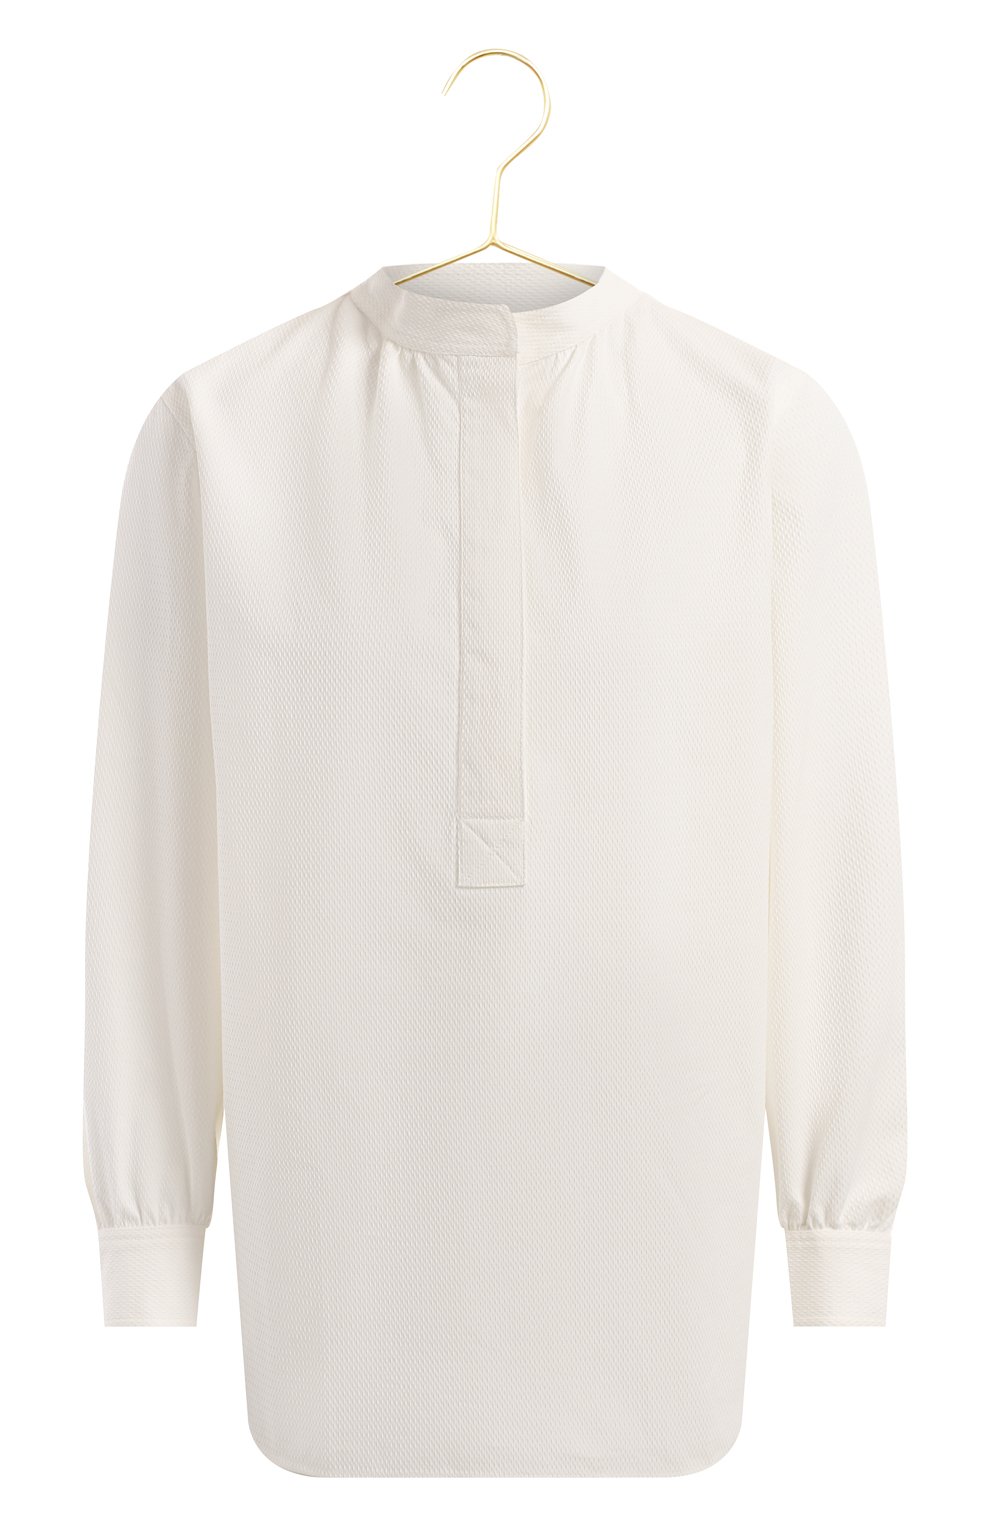 Хлопковая рубашка | Atlantique Ascoli | Белый - 1